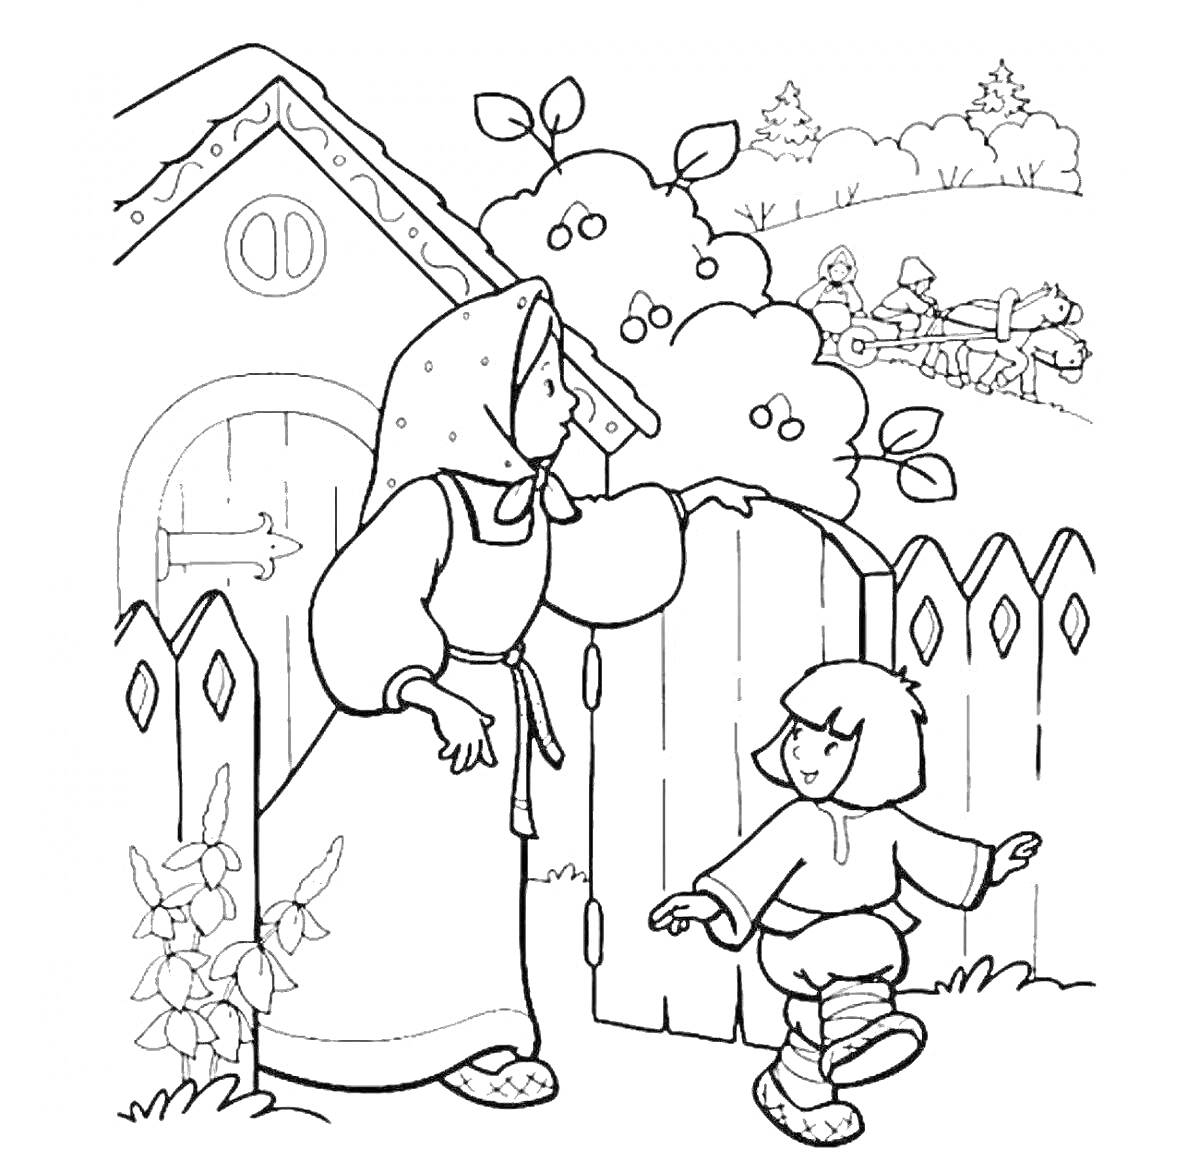 Раскраска Девочка Аленушка с братом за воротами дома, на фоне крестьянской избы и повозки с лошадьми